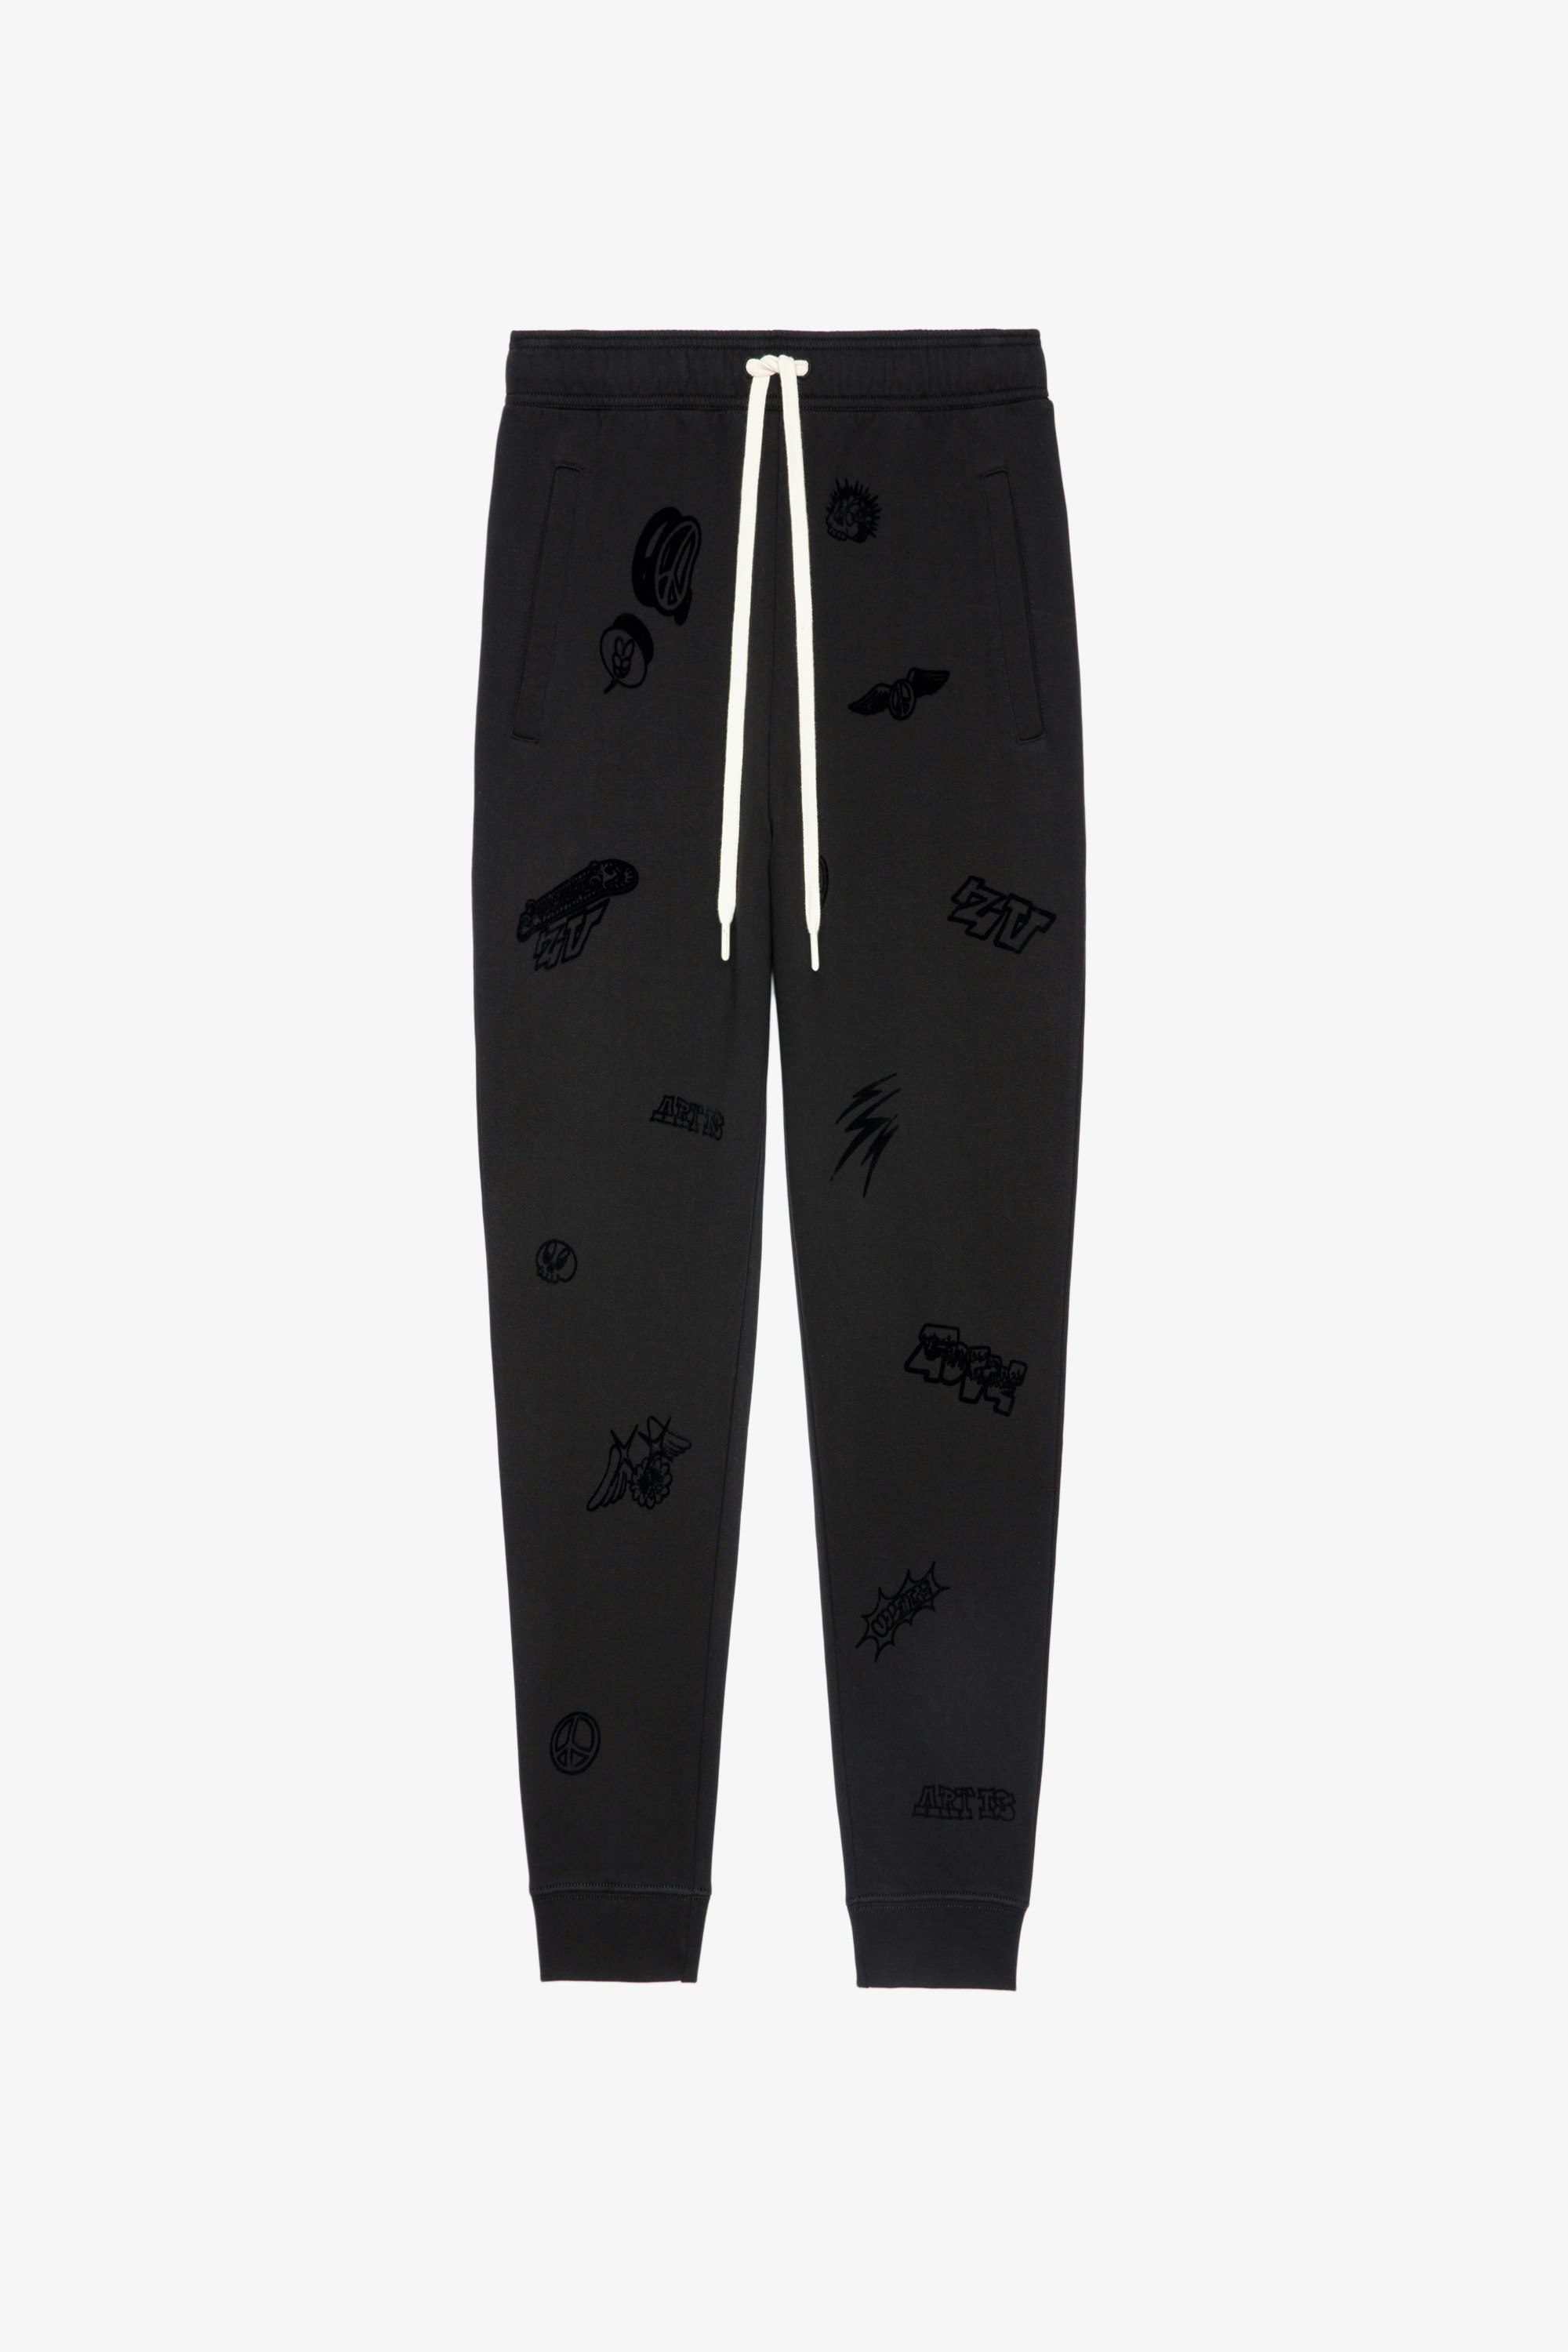 Pantalón Capri Pantalón deportivo negro de algodón con forro polar para hombre con detalles flocados